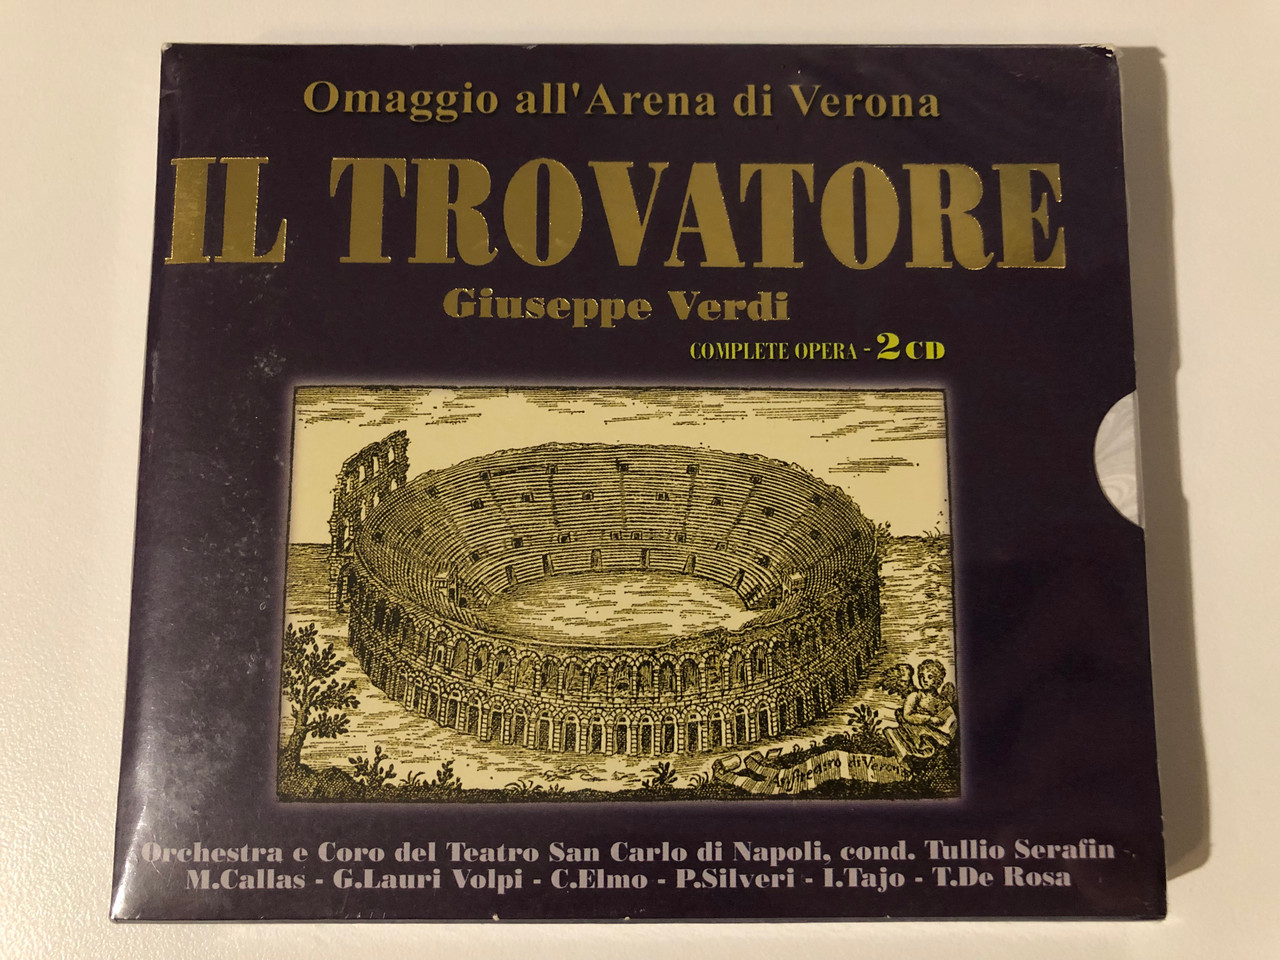 https://cdn10.bigcommerce.com/s-62bdpkt7pb/products/0/images/209194/Omaggio_all_Arena_di_Verona_-_Il_Trovatore_-_Giuseppe_Verdi_Complete_Opera_-_2_CD_Orchestra_e_Coro_del_Teatro_San_Carlo_di_Napoli_cond._Tullio_Serafin_M._Callas_G._Lauri_Volpi_C._Elmo_1__35488.1643213386.1280.1280.JPG?c=2&_gl=1*zrgl2g*_ga*MjA2NTIxMjE2MC4xNTkwNTEyNTMy*_ga_WS2VZYPC6G*MTY0MzIwOTQ0MC4yNzMuMS4xNjQzMjEzNDAzLjYw